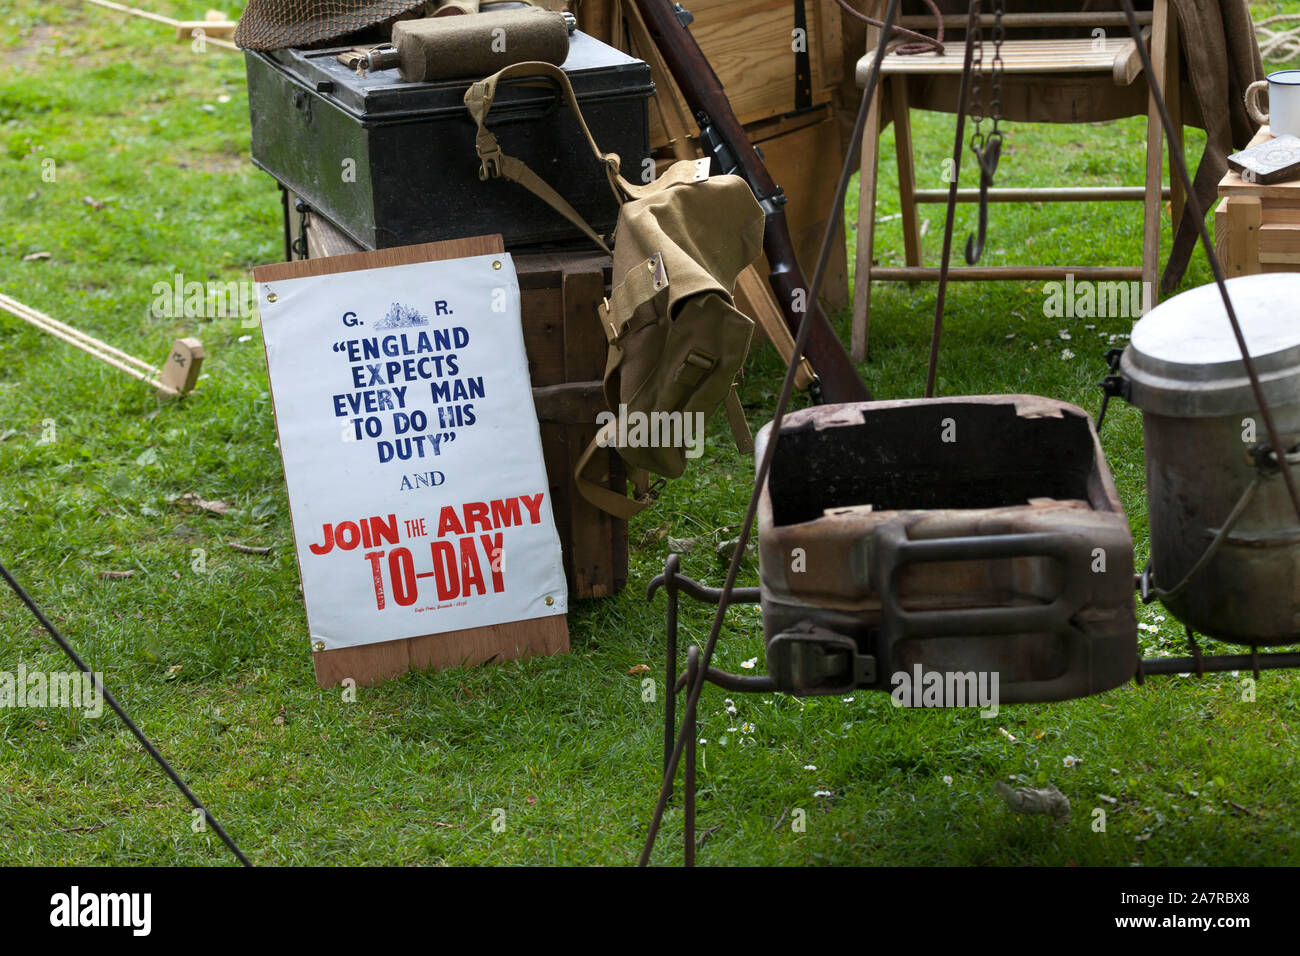 Segunda Guerra Mundial cartel que dice "Inglaterra espera que cada hombre para hacer su deber y unirse al ejército de hoy" Foto de stock